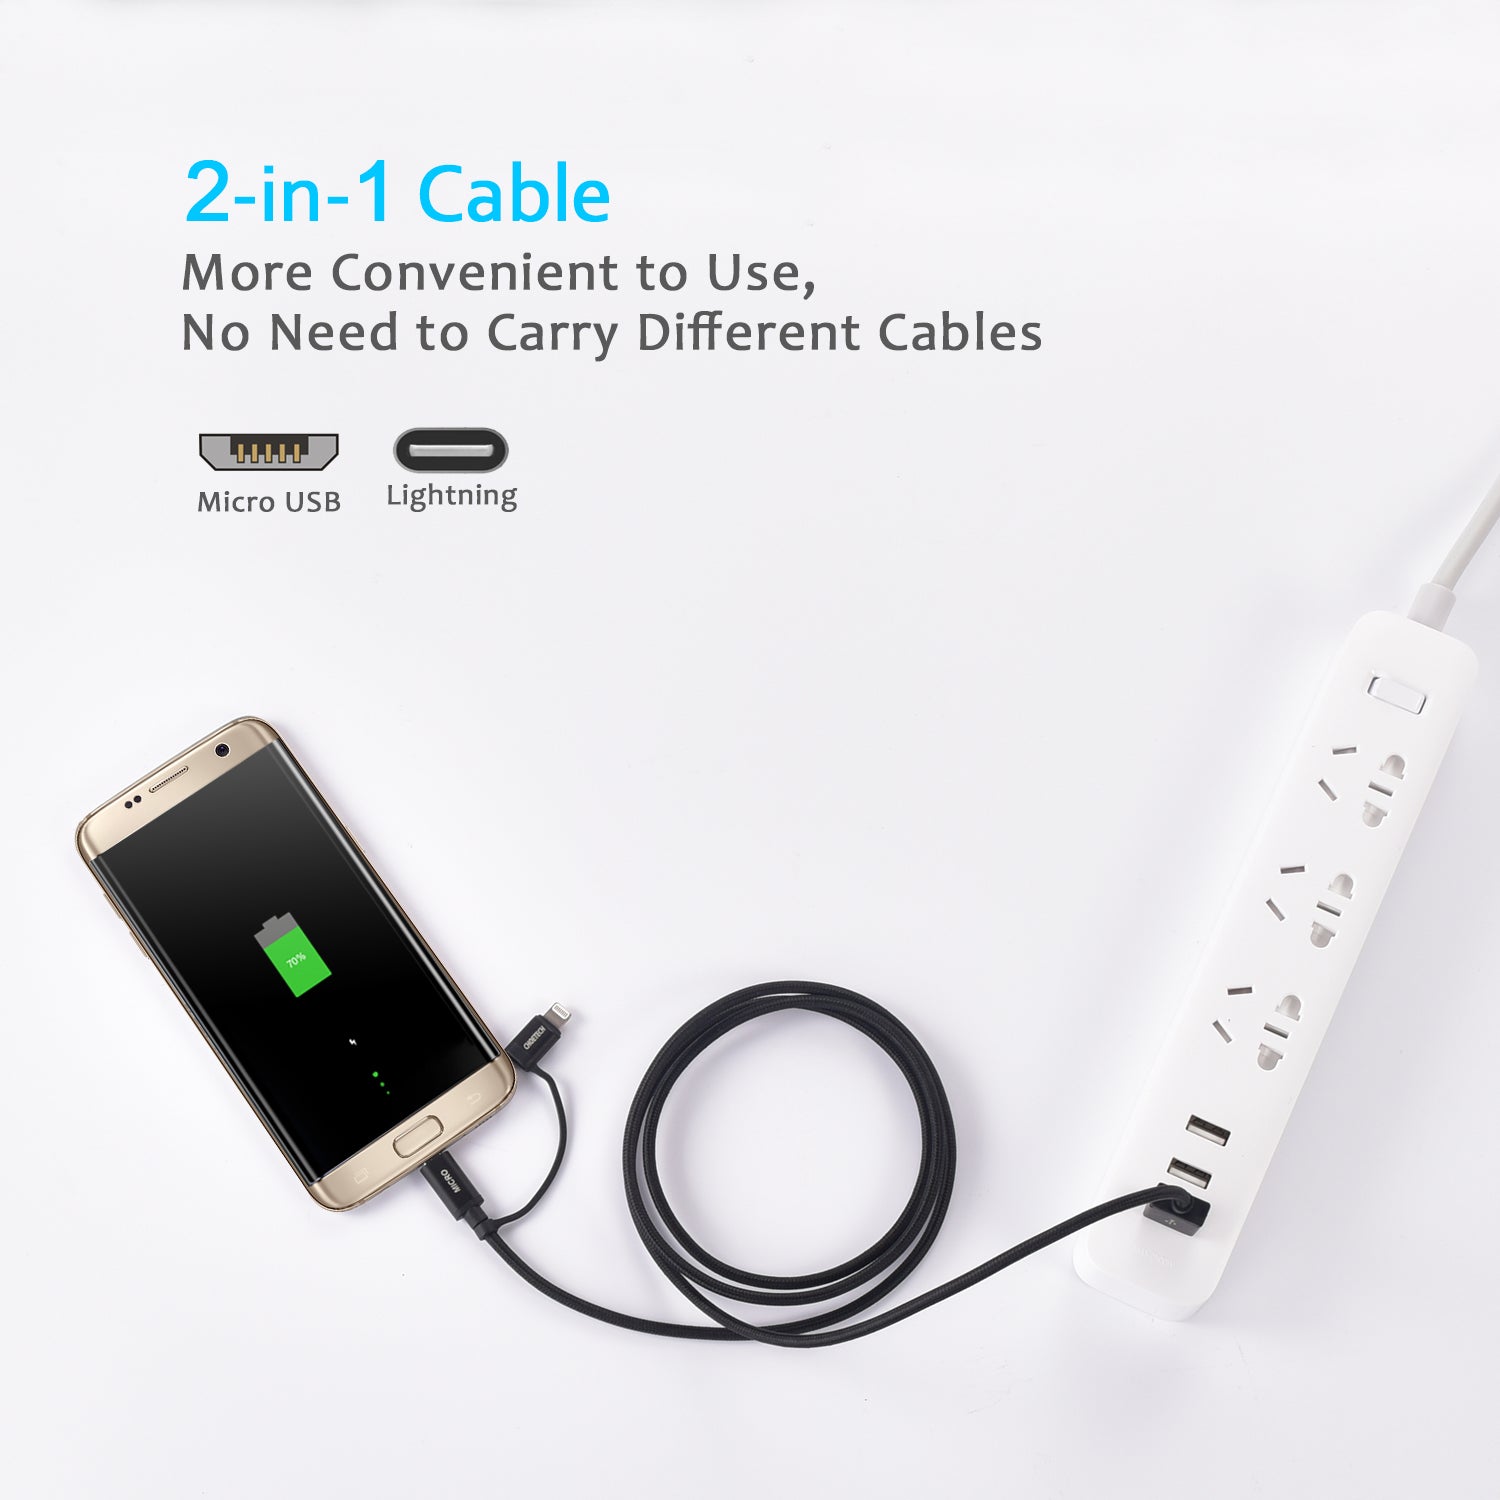 IP0028 [Certifié Apple MFi] CHOETECH Câble Lightning et Micro USB 2 en 1 (1,2 m), câble de charge et de synchronisation tressé en nylon pour iPhone 7/7 Plus/6s/6s Plus/6/6 Plus, iPad, iPod, Galaxy Bord S7 et plus